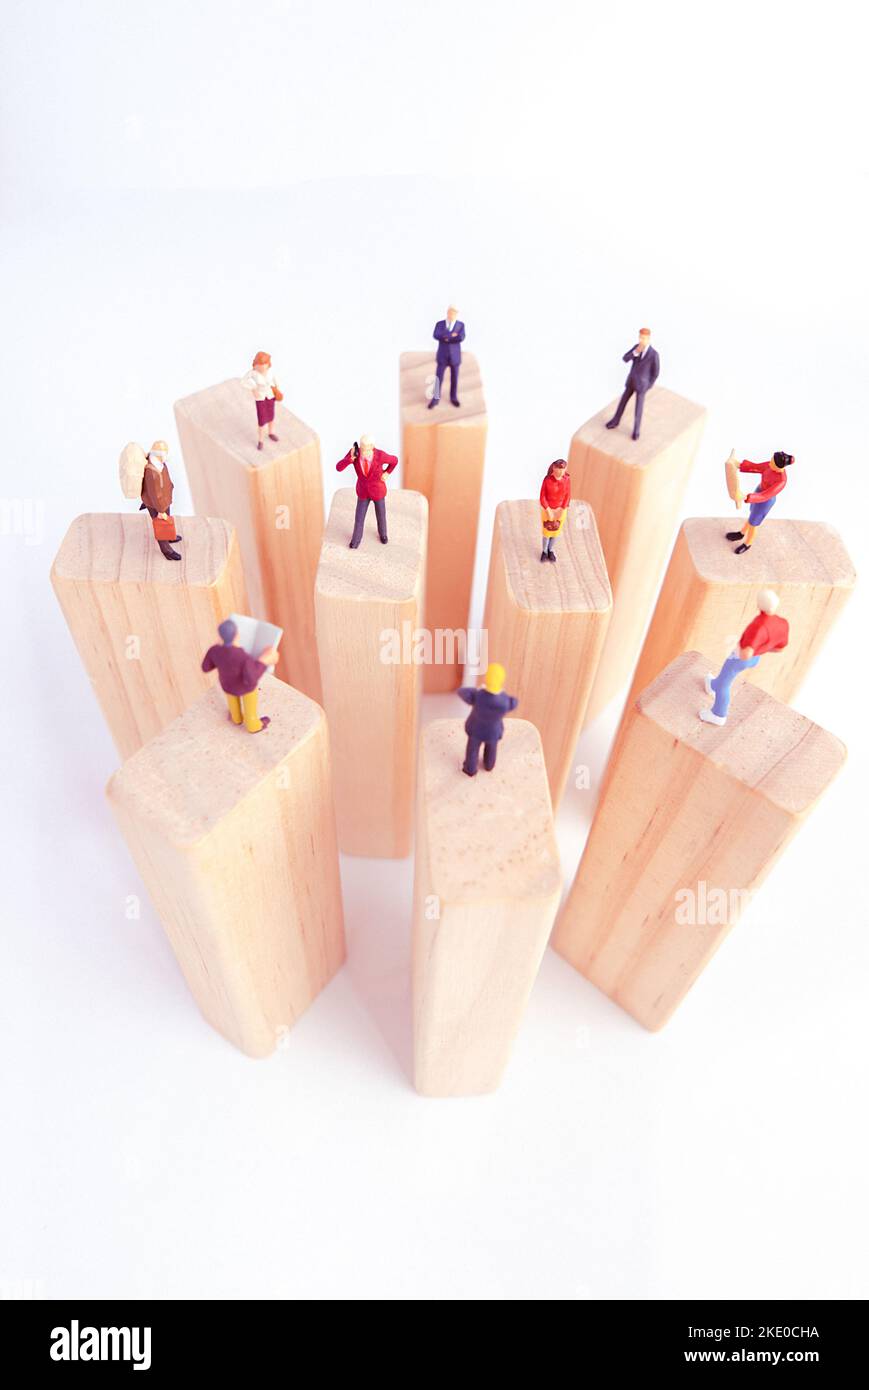 Draufsicht auf Miniaturspielzeug, das auf Holzblock steht - soziales Distanzierungskonzept, antisoziales oder Teamwork-Konzept. Stockfoto